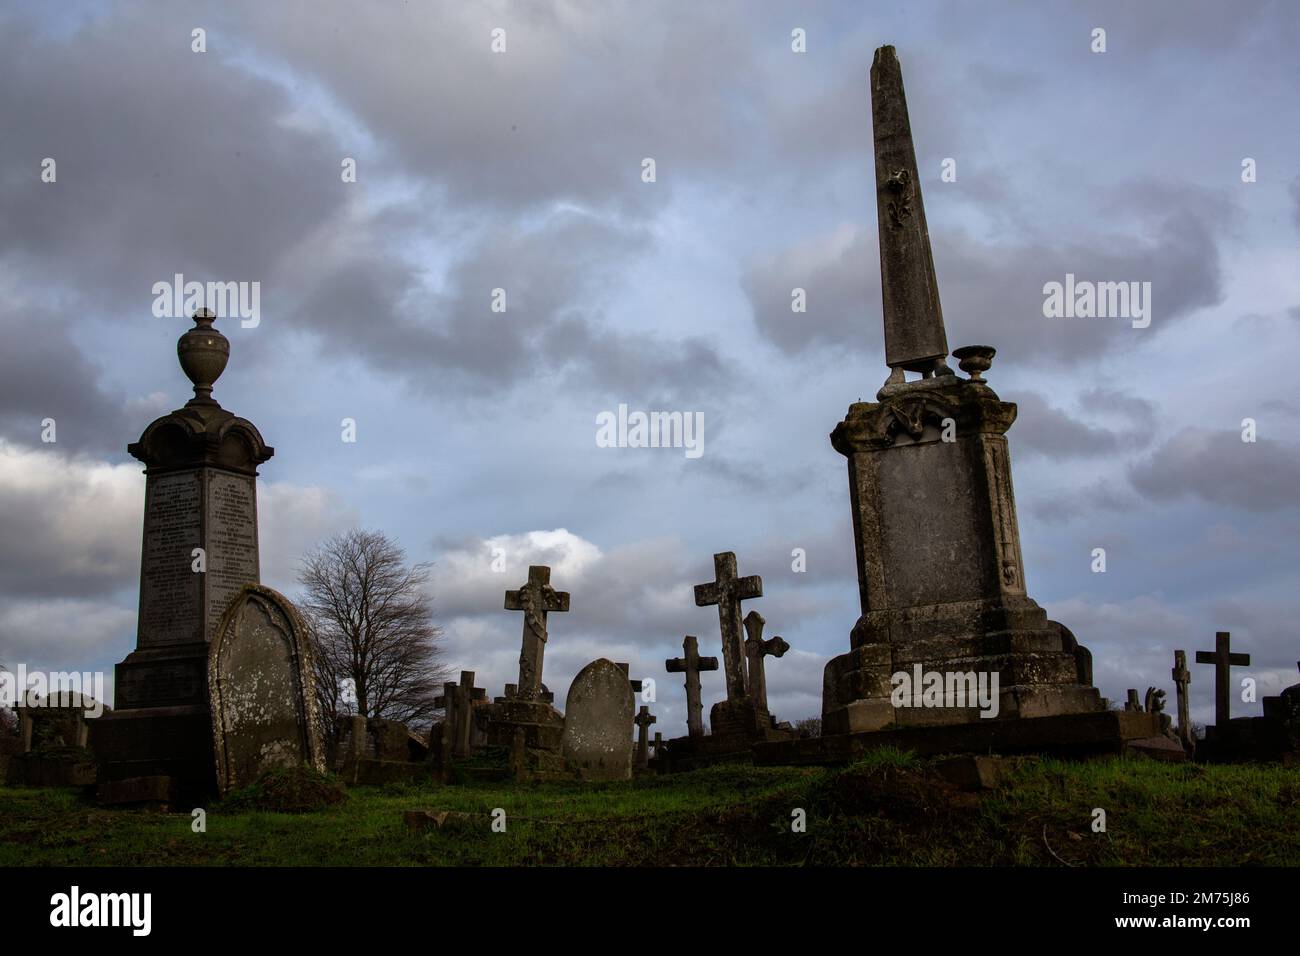 Tombe e lapidi nel cimitero di Kensal Green in inverno, Londra ovest Inghilterra Regno Unito Foto Stock